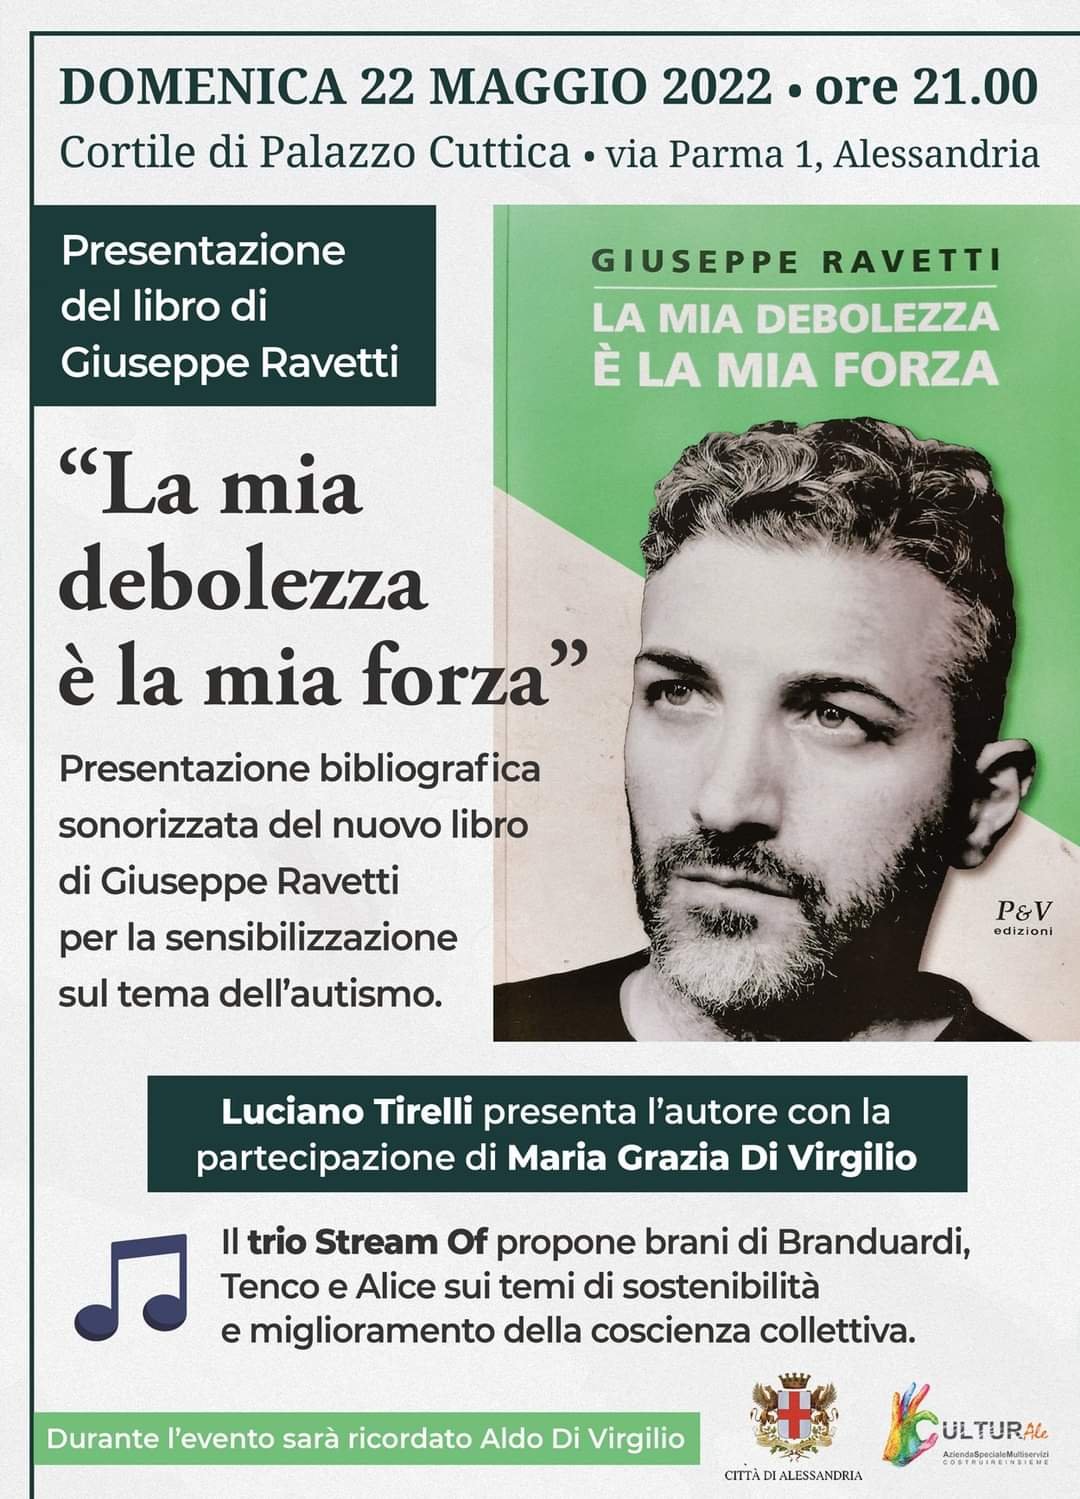 Il 22 maggio a Palazzo Cuttica Giuseppe Ravetti presenta “La mia debolezza è la mia forza”